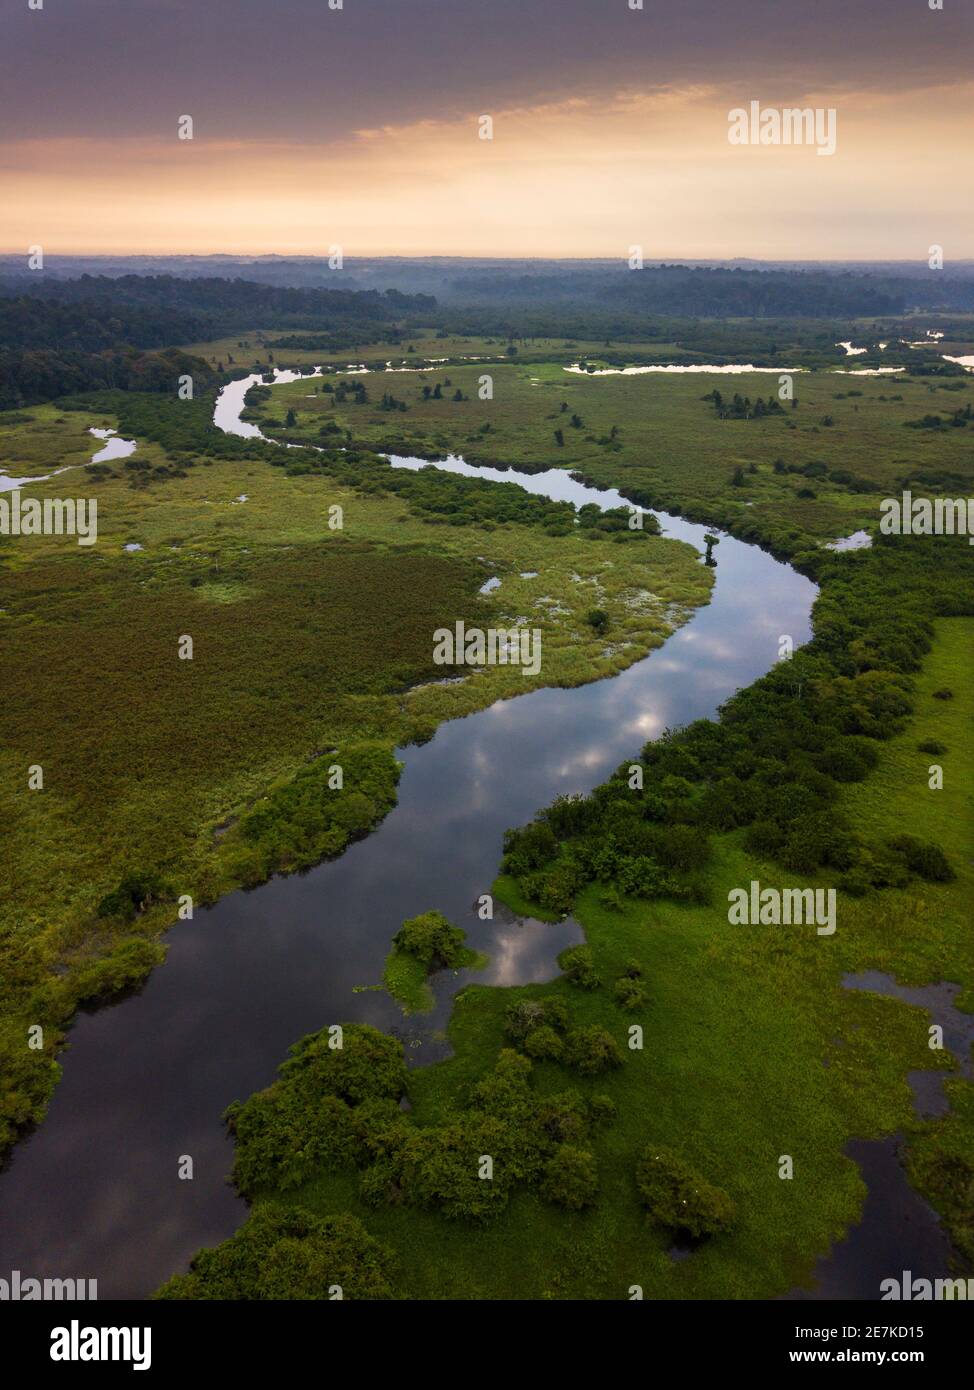 Río Rembo Ngowe y humedales tropicales al amanecer, Akaka, Parque Nacional Loango, Gabón. Foto de stock